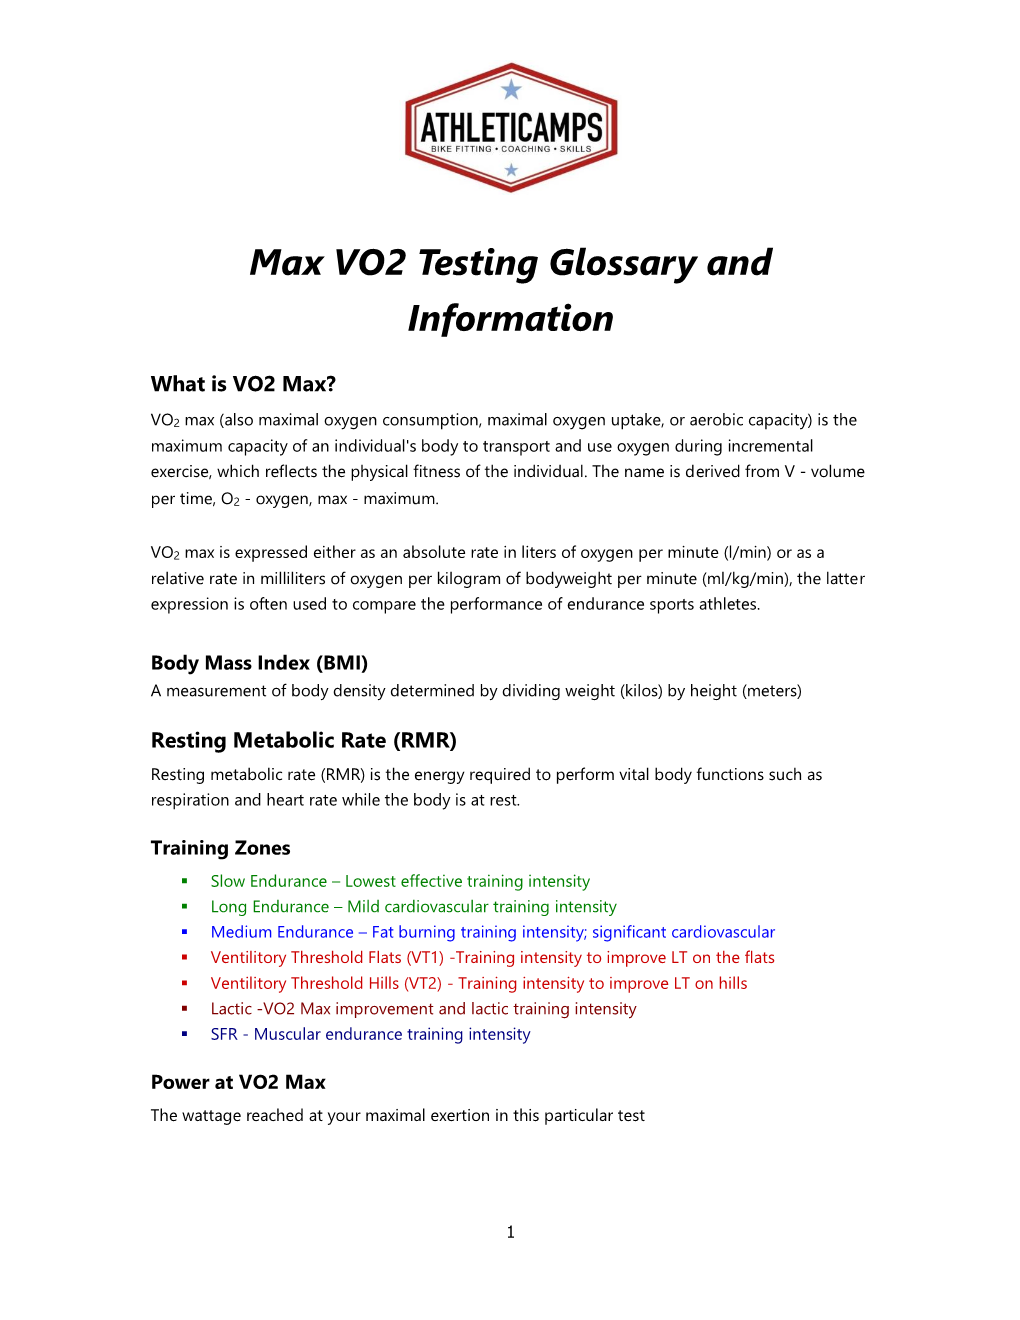 VO2 Max Glossary